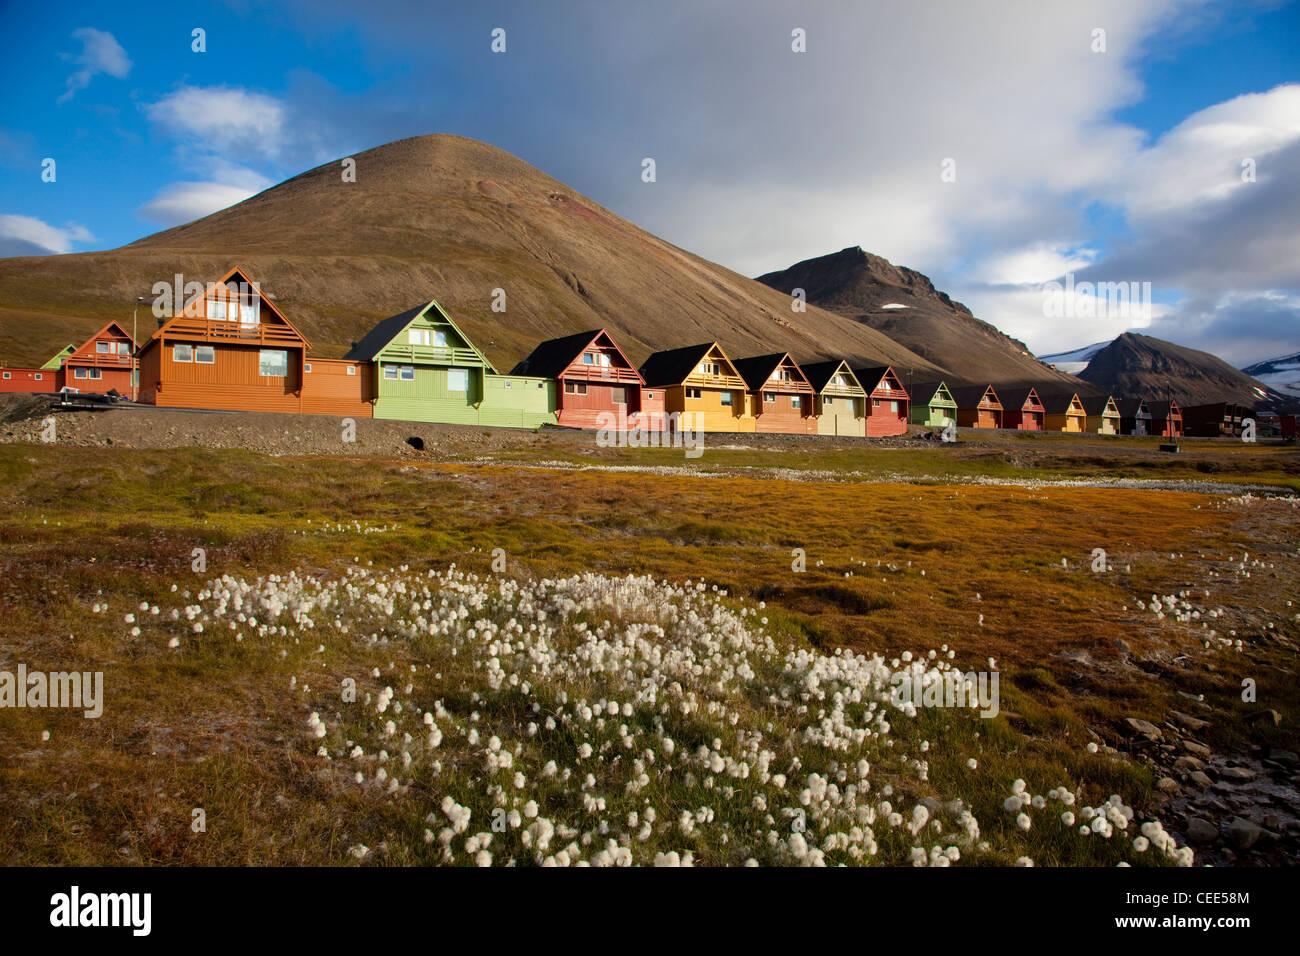 Maisons en bois à Longyearbyen, la plus grande colonie de l'archipel du Svalbard, Norvège. Banque D'Images